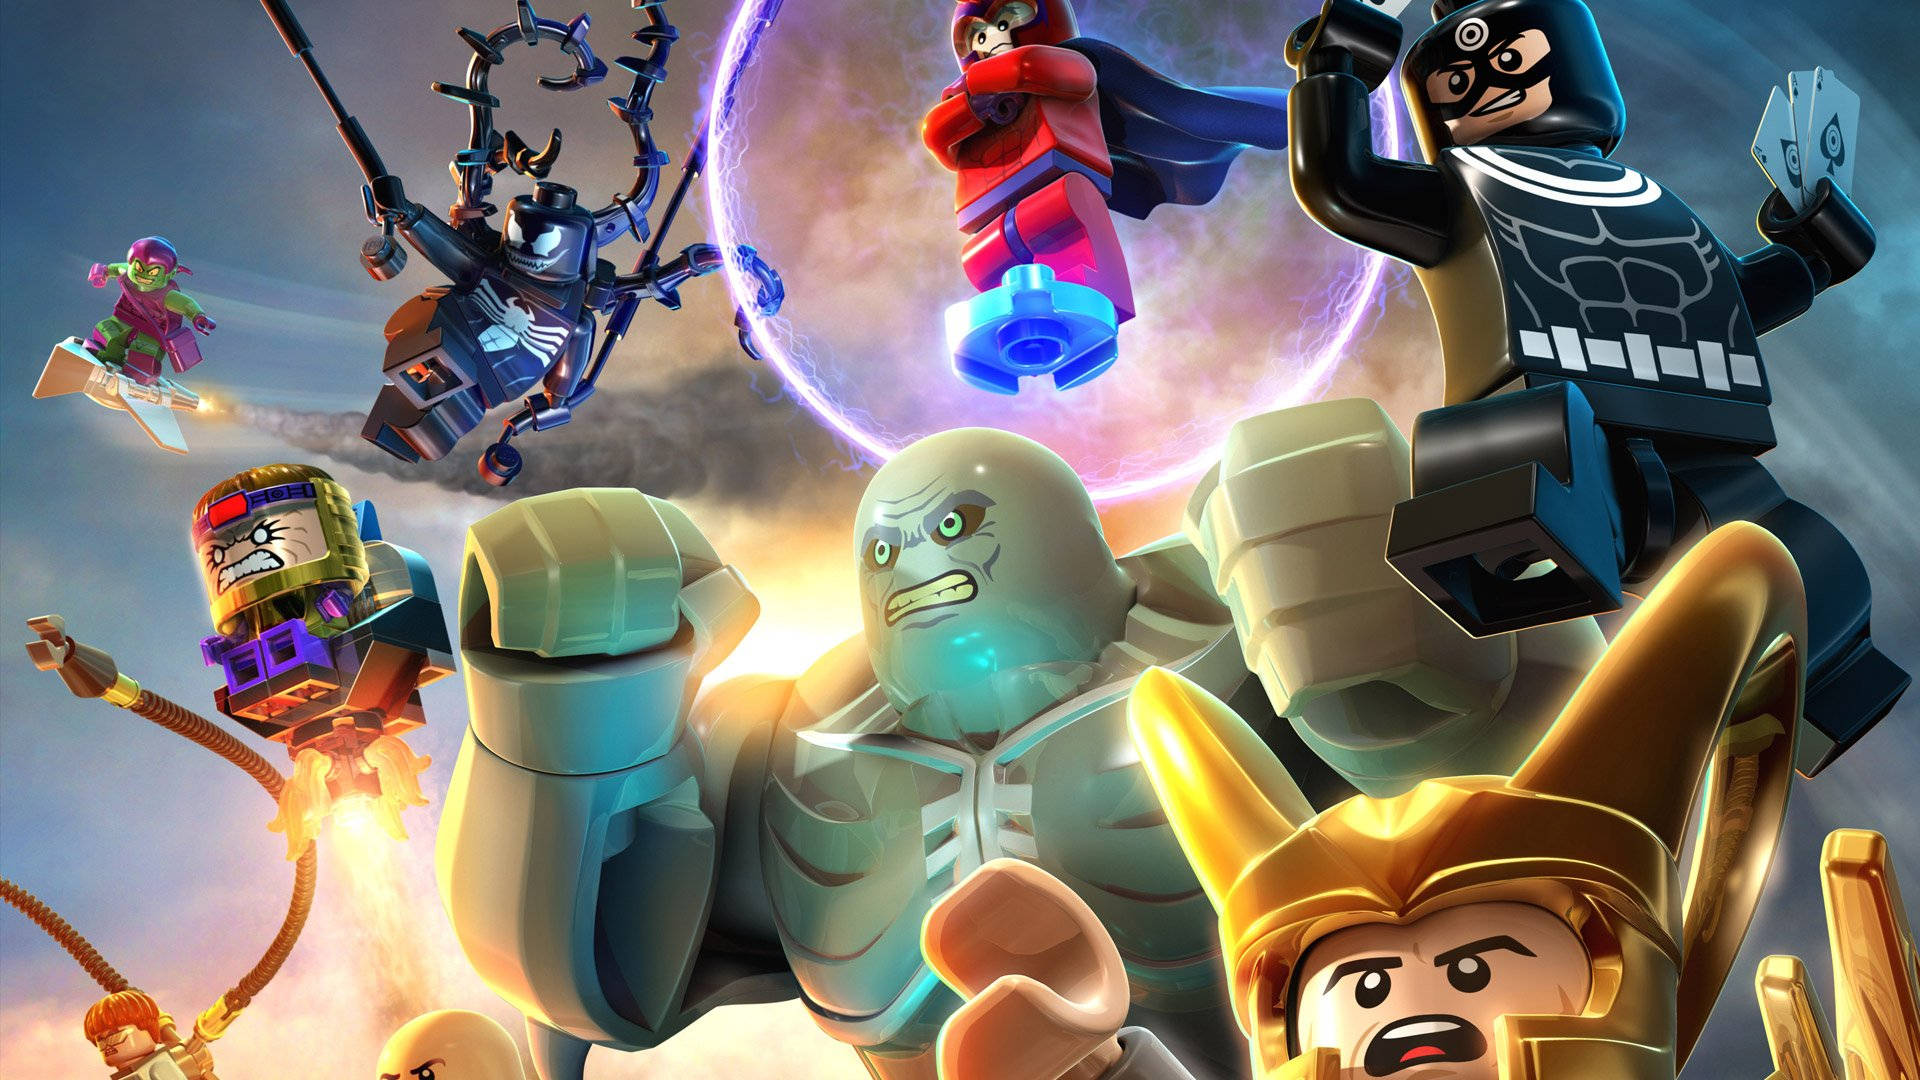 Papéisde Parede Fofos Dos Super-heróis Da Marvel Em Lego. Papel de Parede